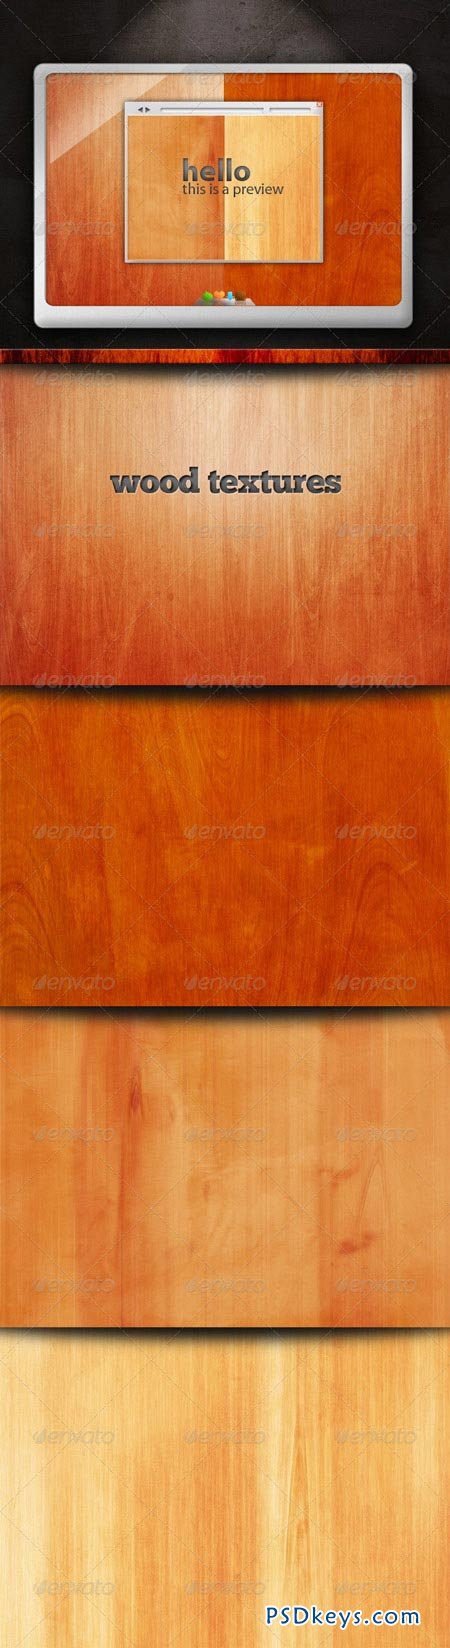 Wood Textures 159114